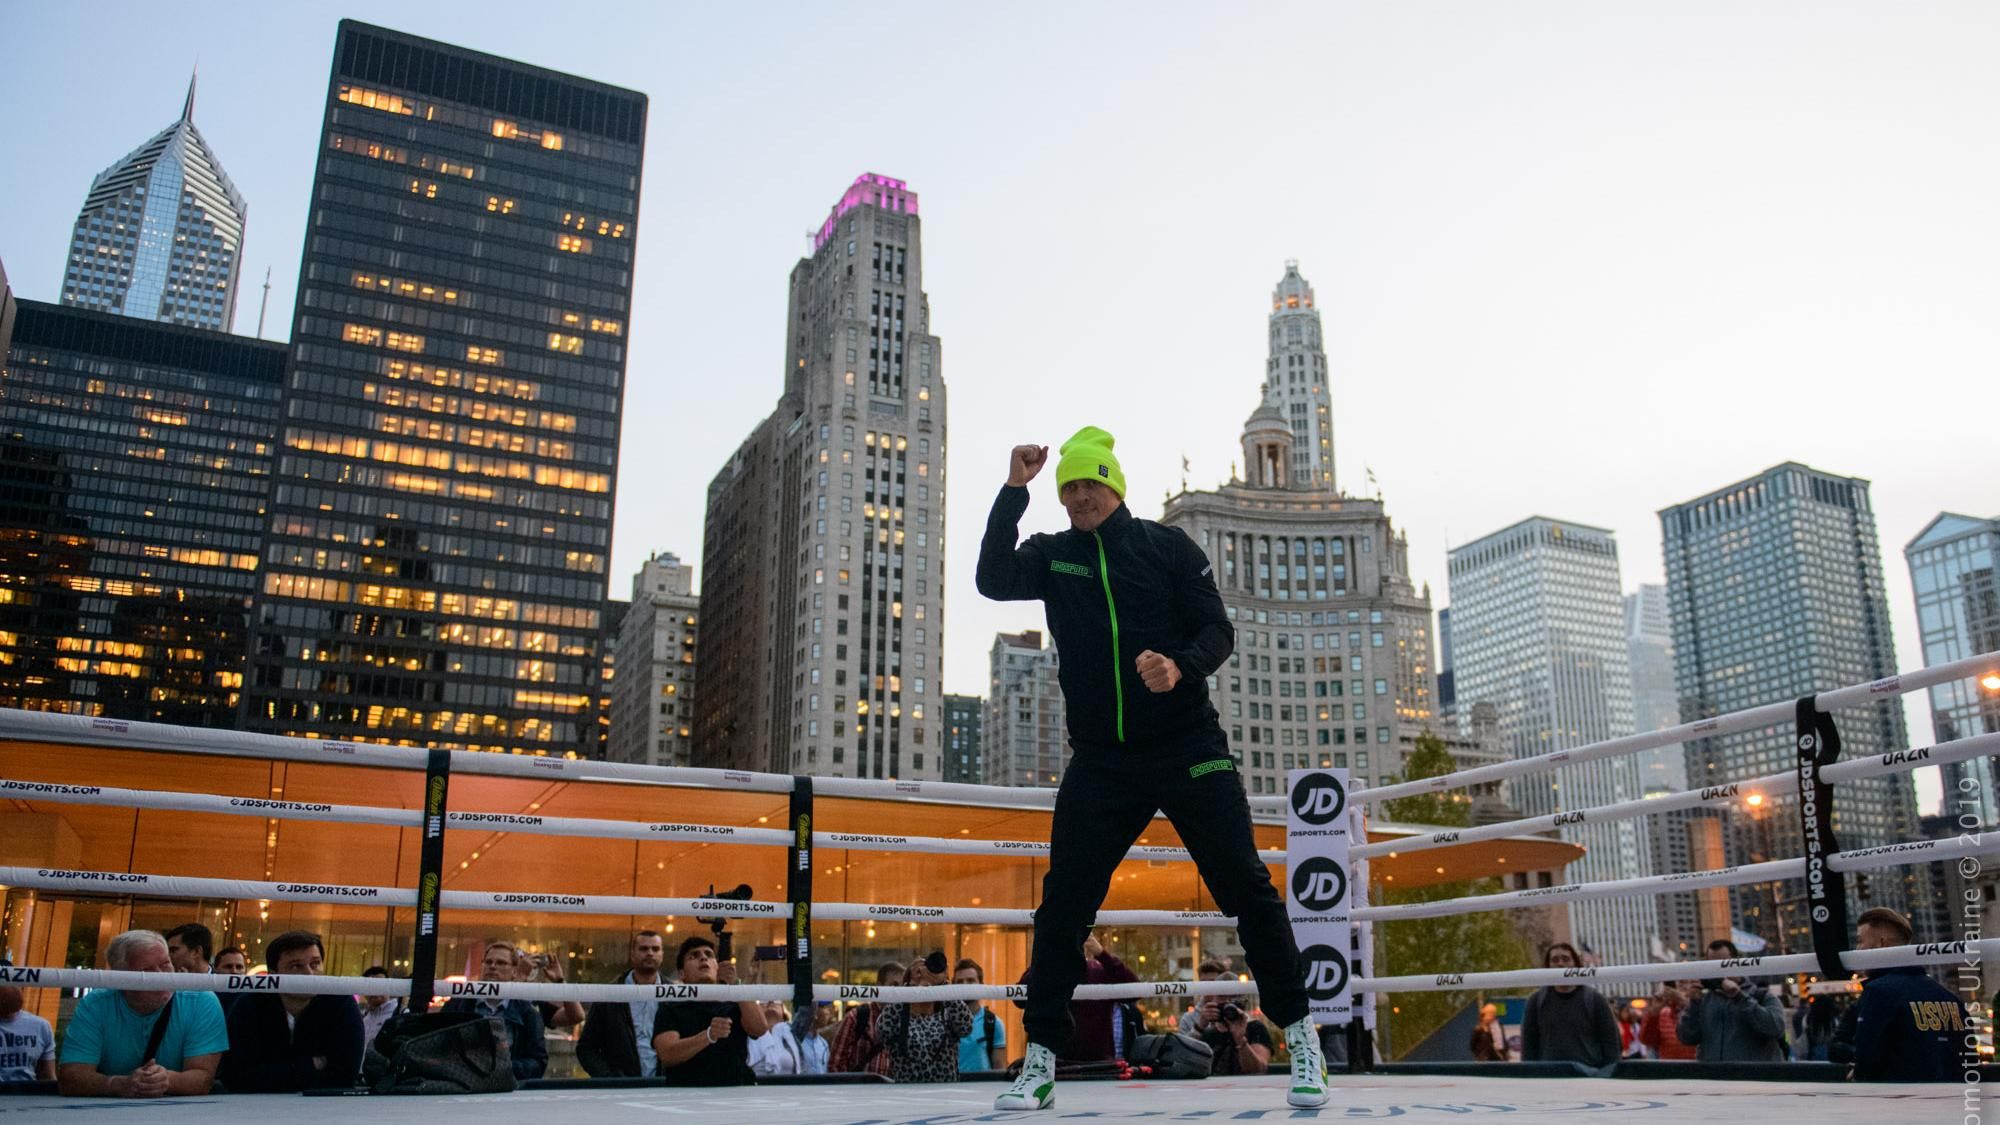 Усик провел открытую тренировку посреди улицы в Чикаго: фото и видео